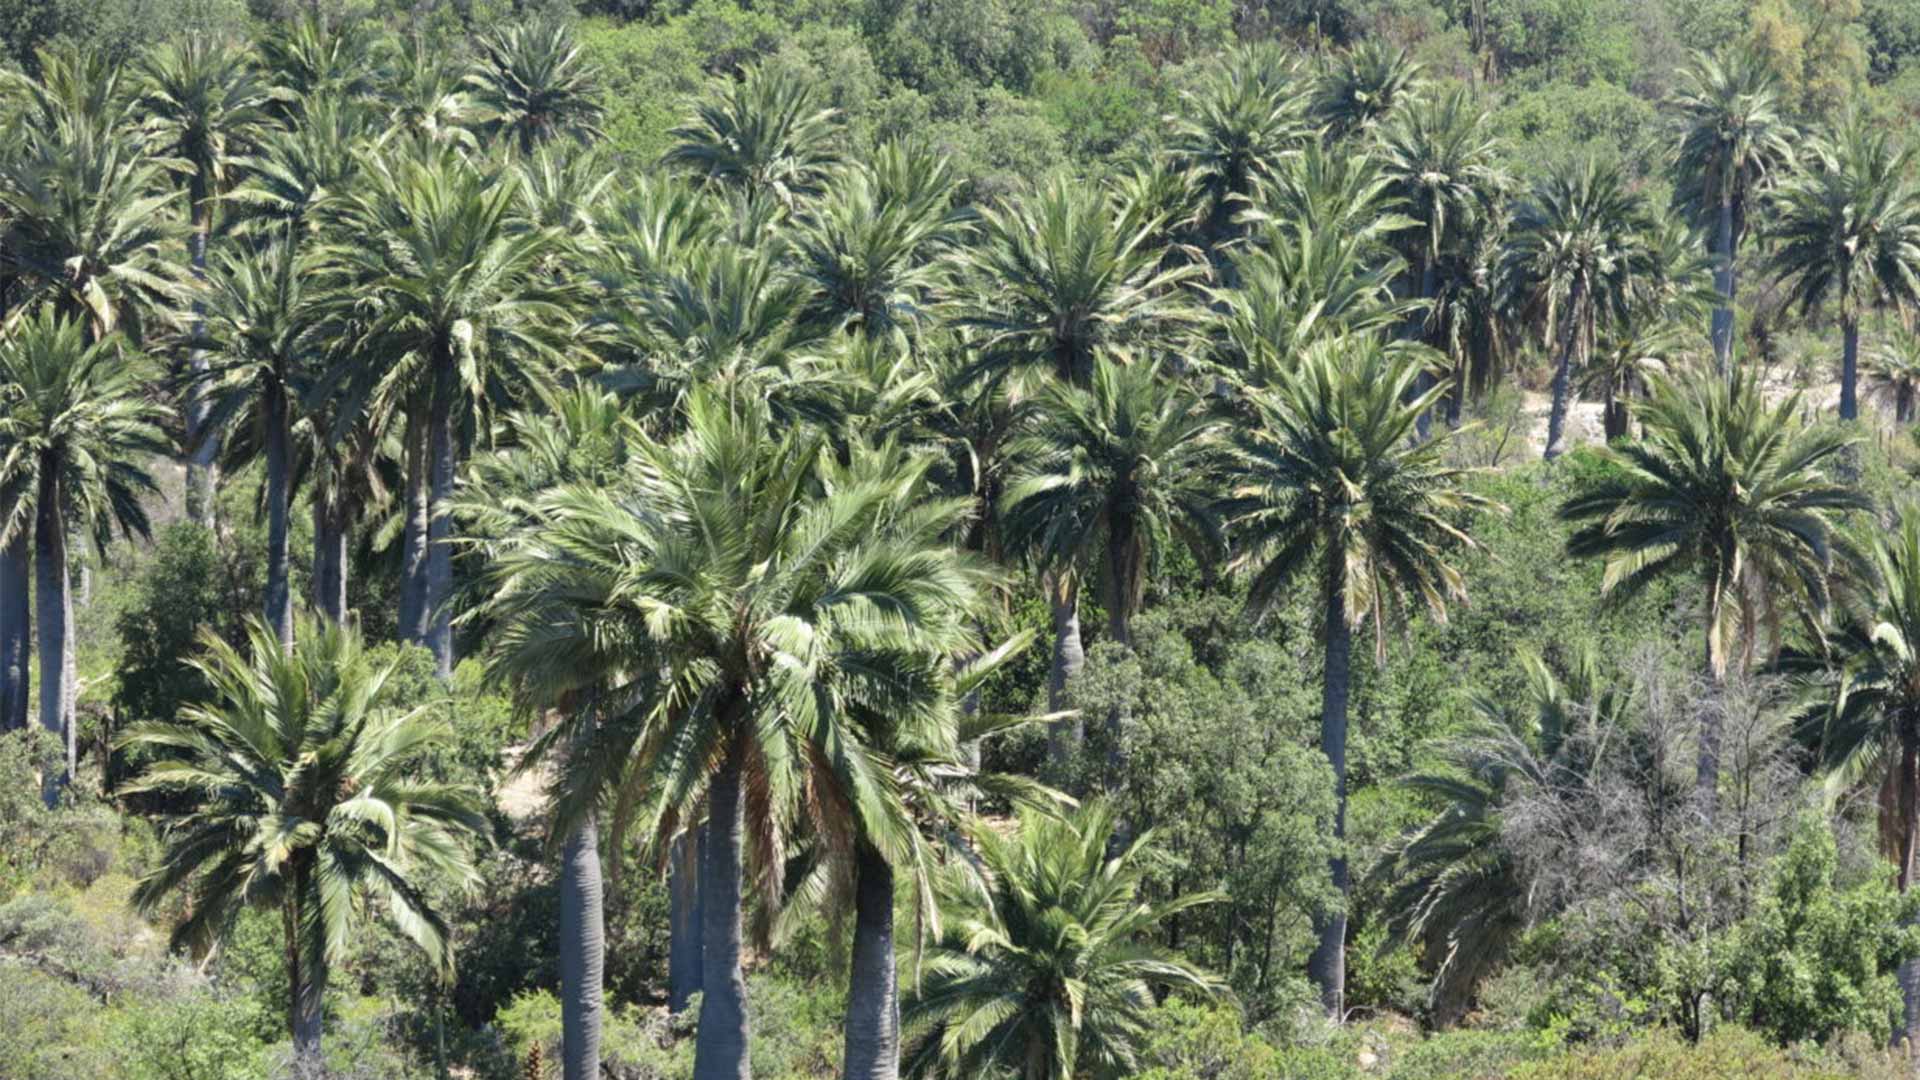 De majestueuze Jubaea Chilensis palmboom (Chileense wijnpalm)De majestueuze Jubaea Chilensis palmboom (Chileense wijnpalm)